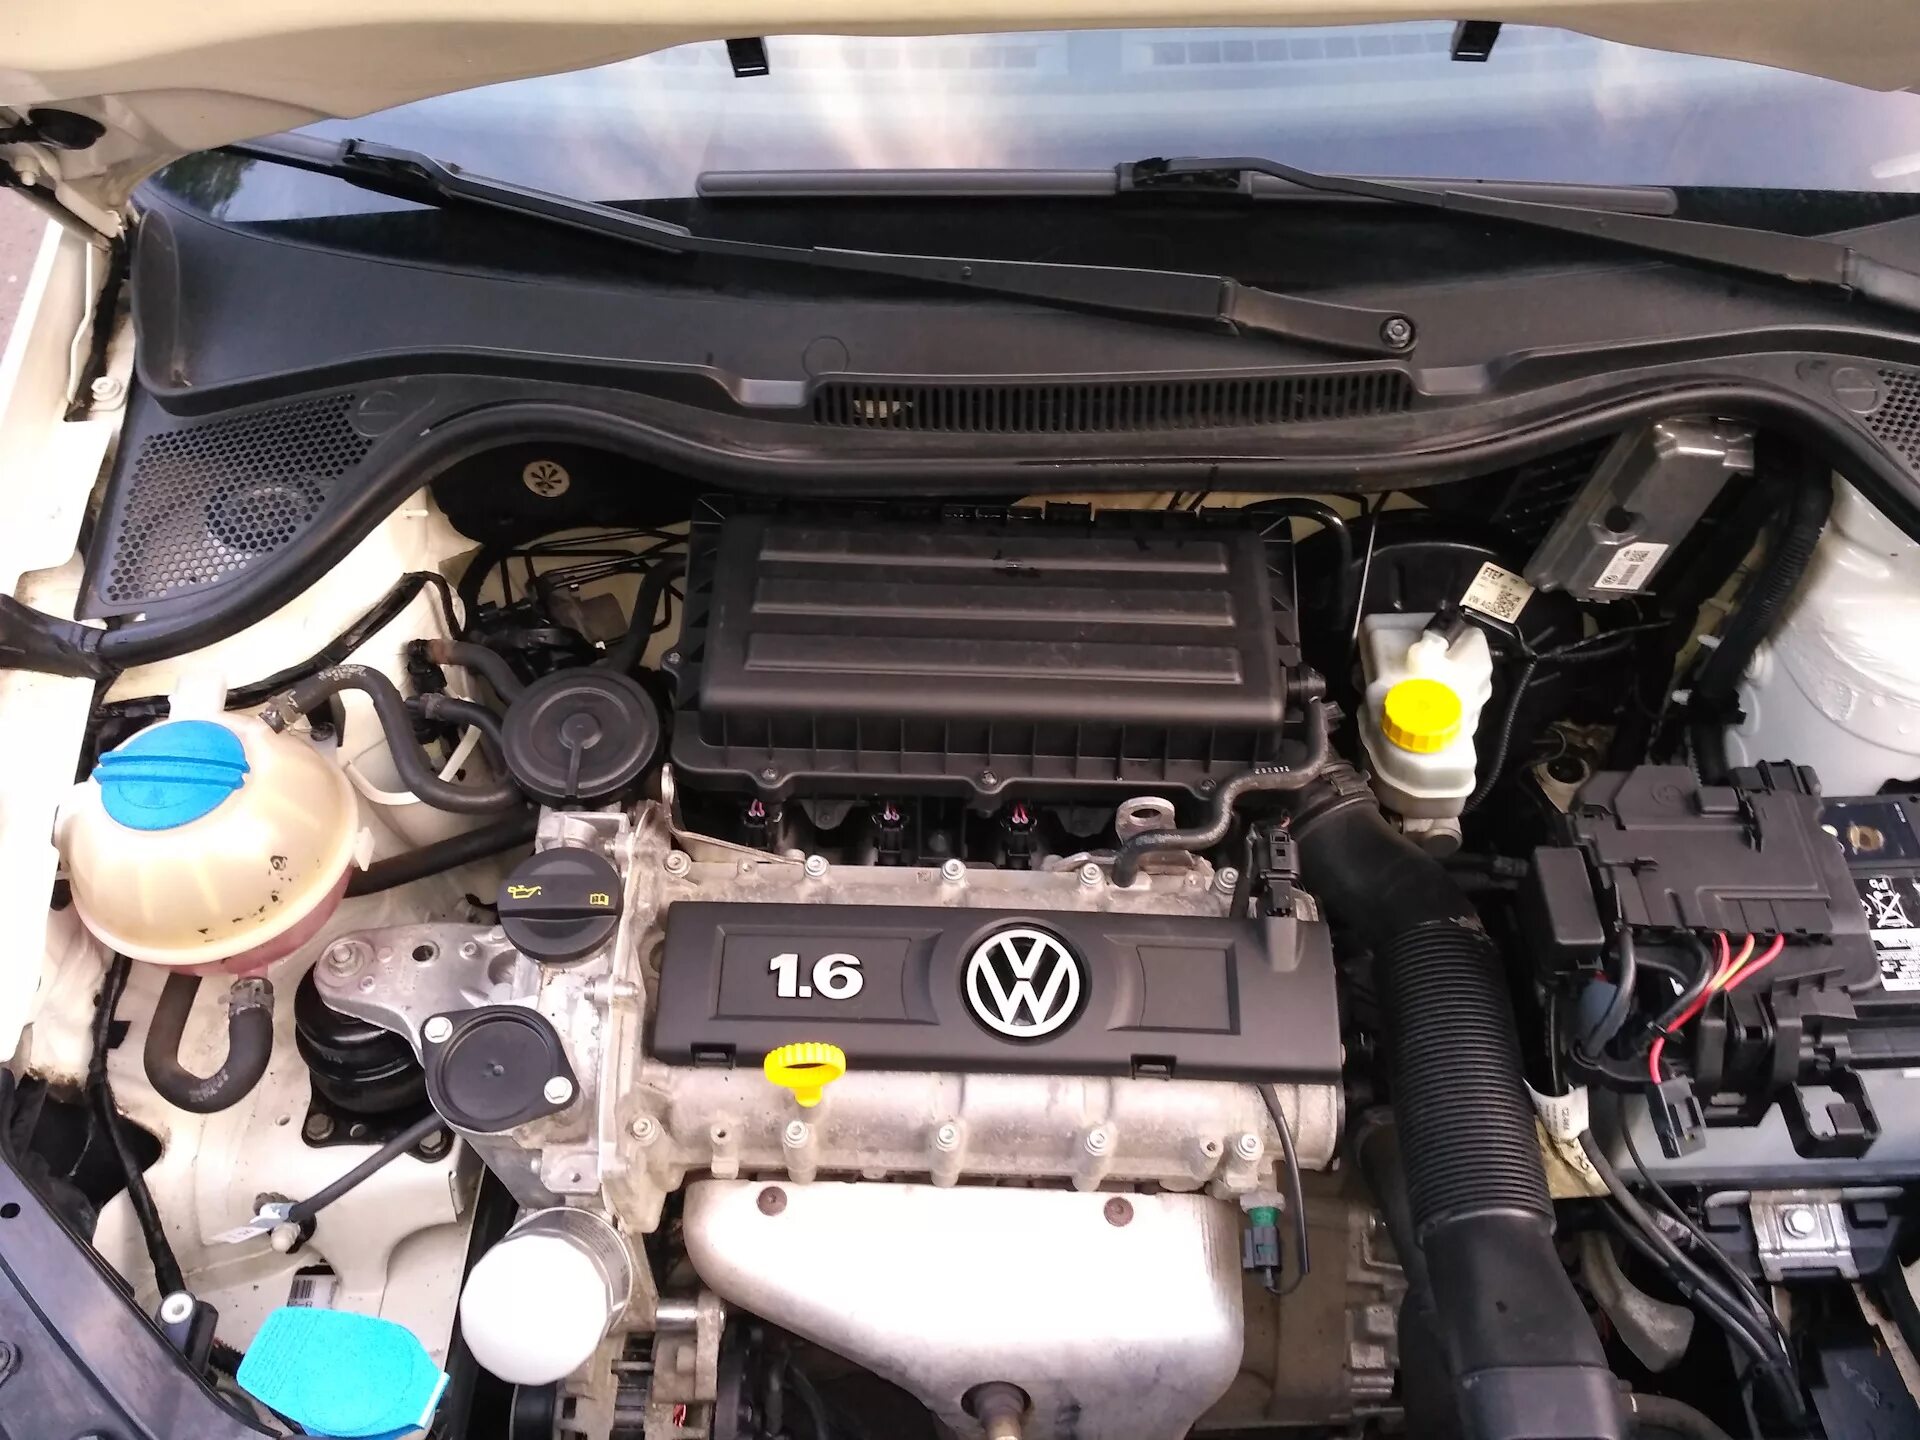 Polo sedan двигатель. Мотор поло седан 1.6 105 л.с. Фольксваген поло ДВС 1.6. Двигатель Volkswagen Polo sedan 1.6. Двигатель поло седан 1.6 105.